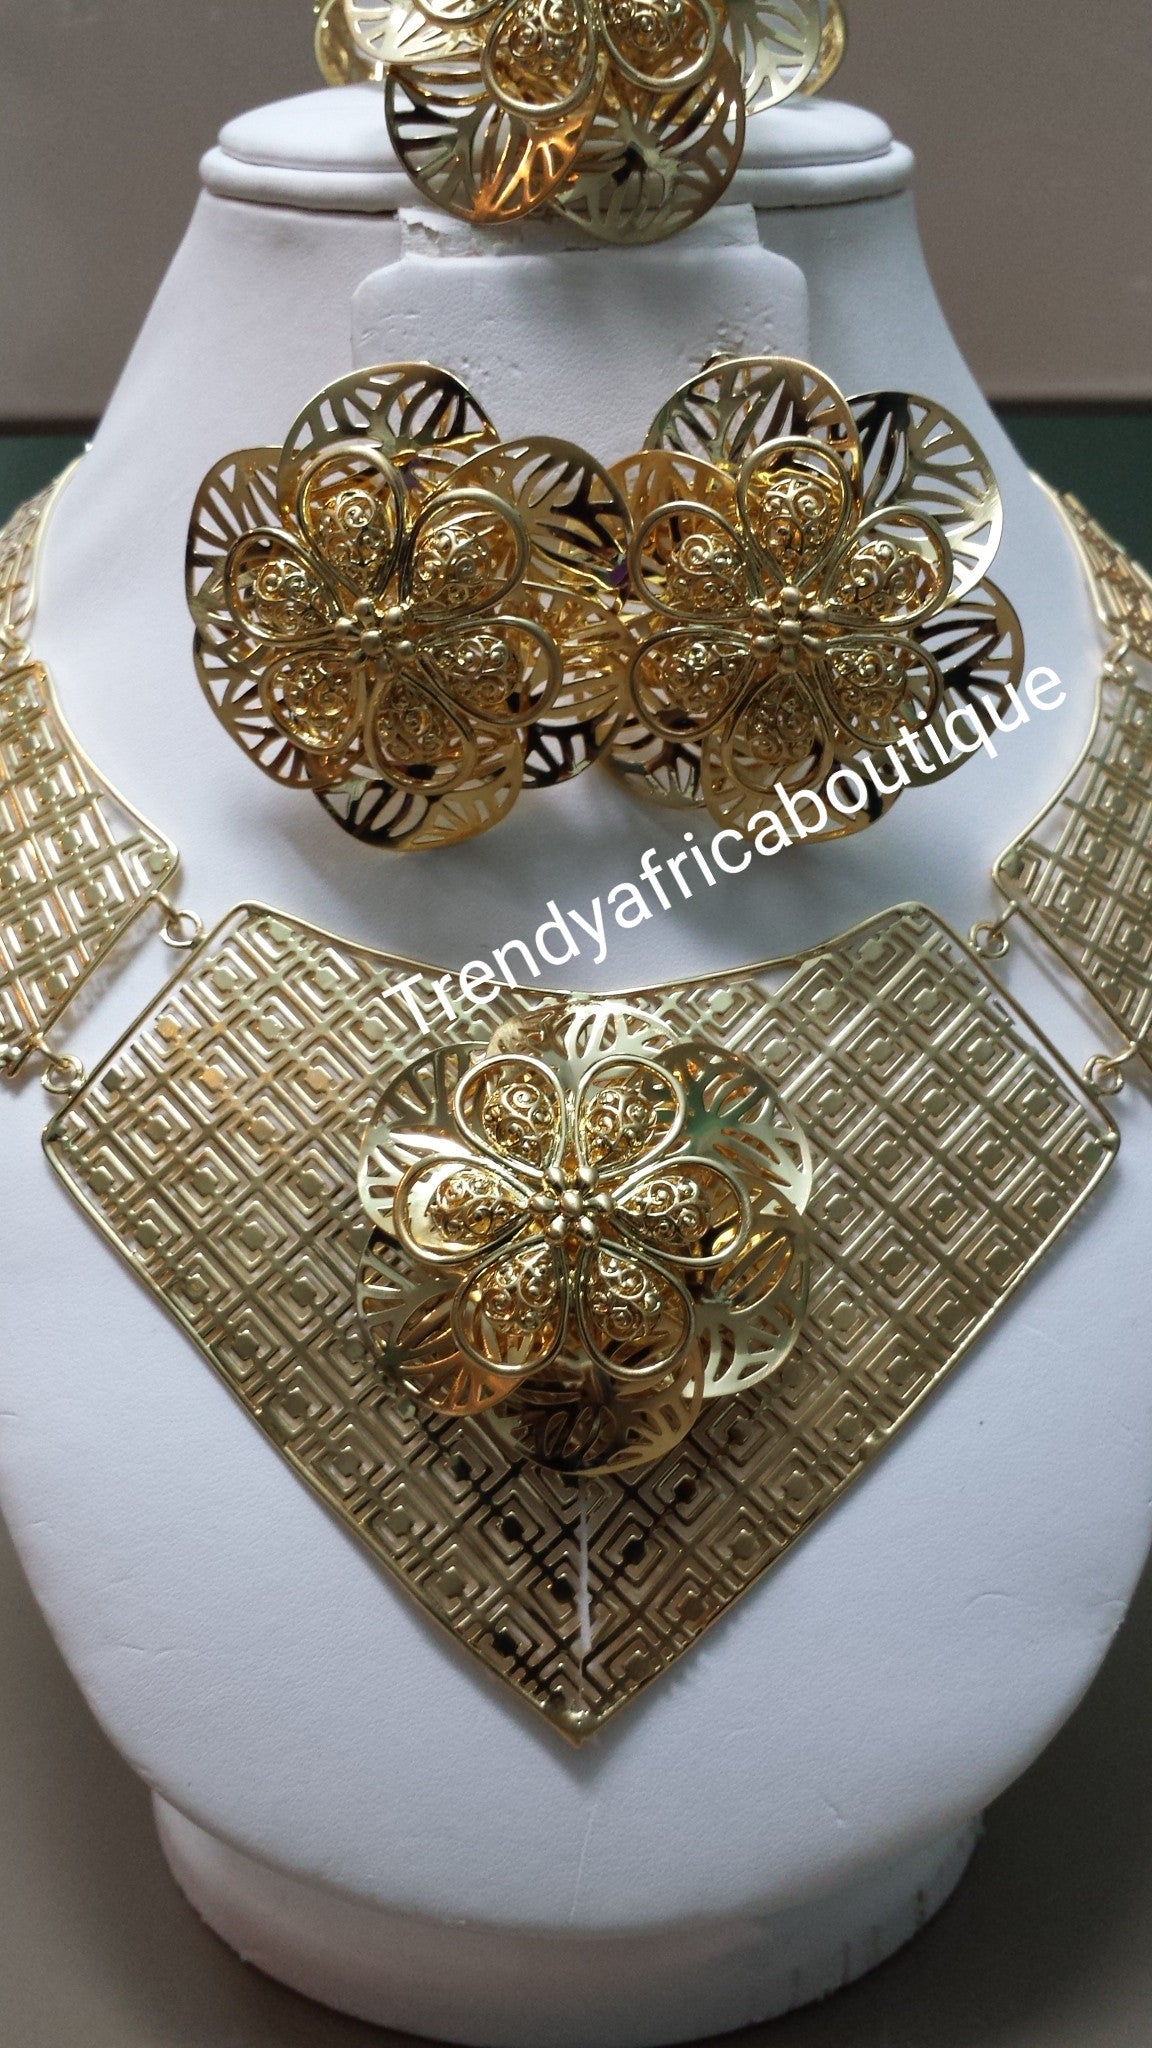 Sale: 4pcs choker necklace jewelry set. 18k gold plated matching choker set. Beautiful flower design